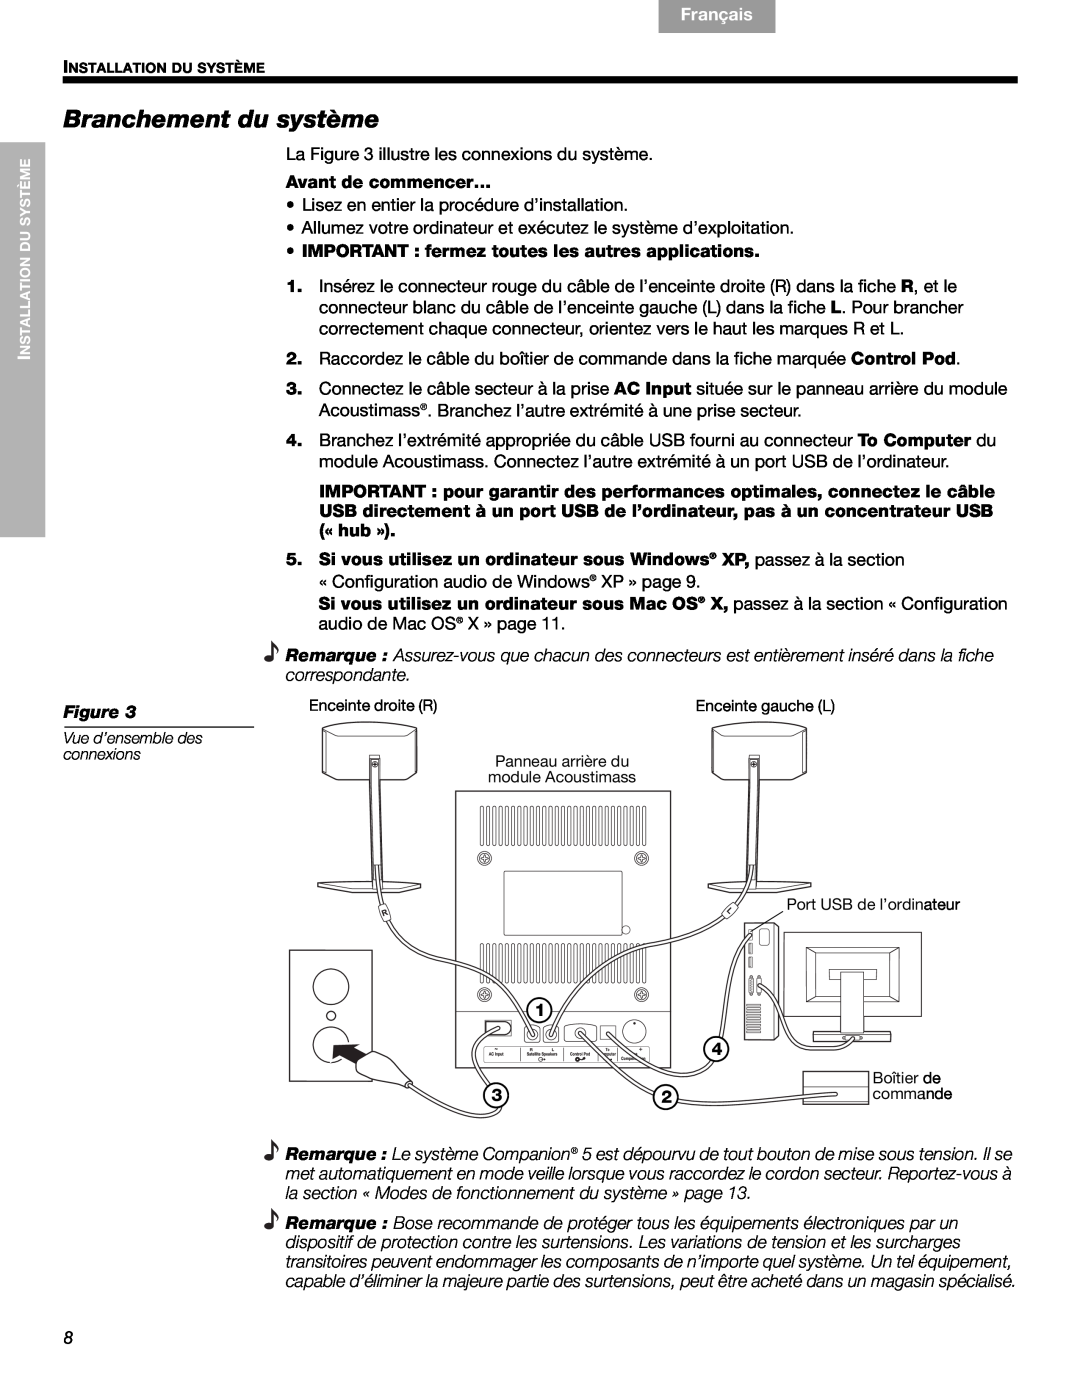 Bose 40326, Companion (R) 5 manual Branchement du système, Français, Español, English 